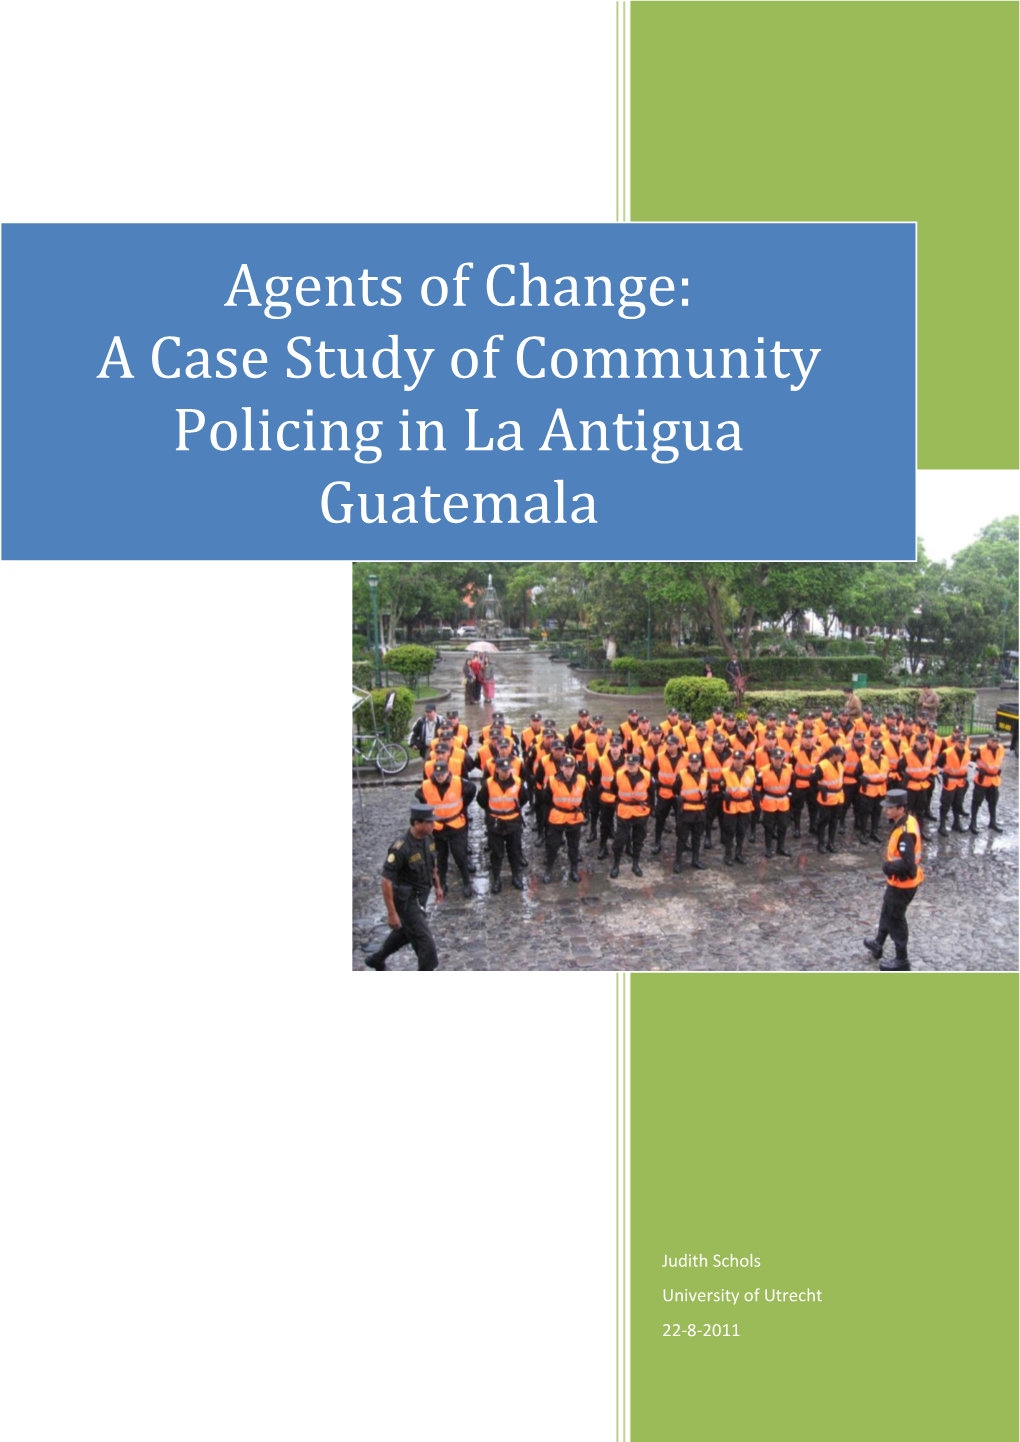 A Case Study of Community Policing in La Antigua Guatemala